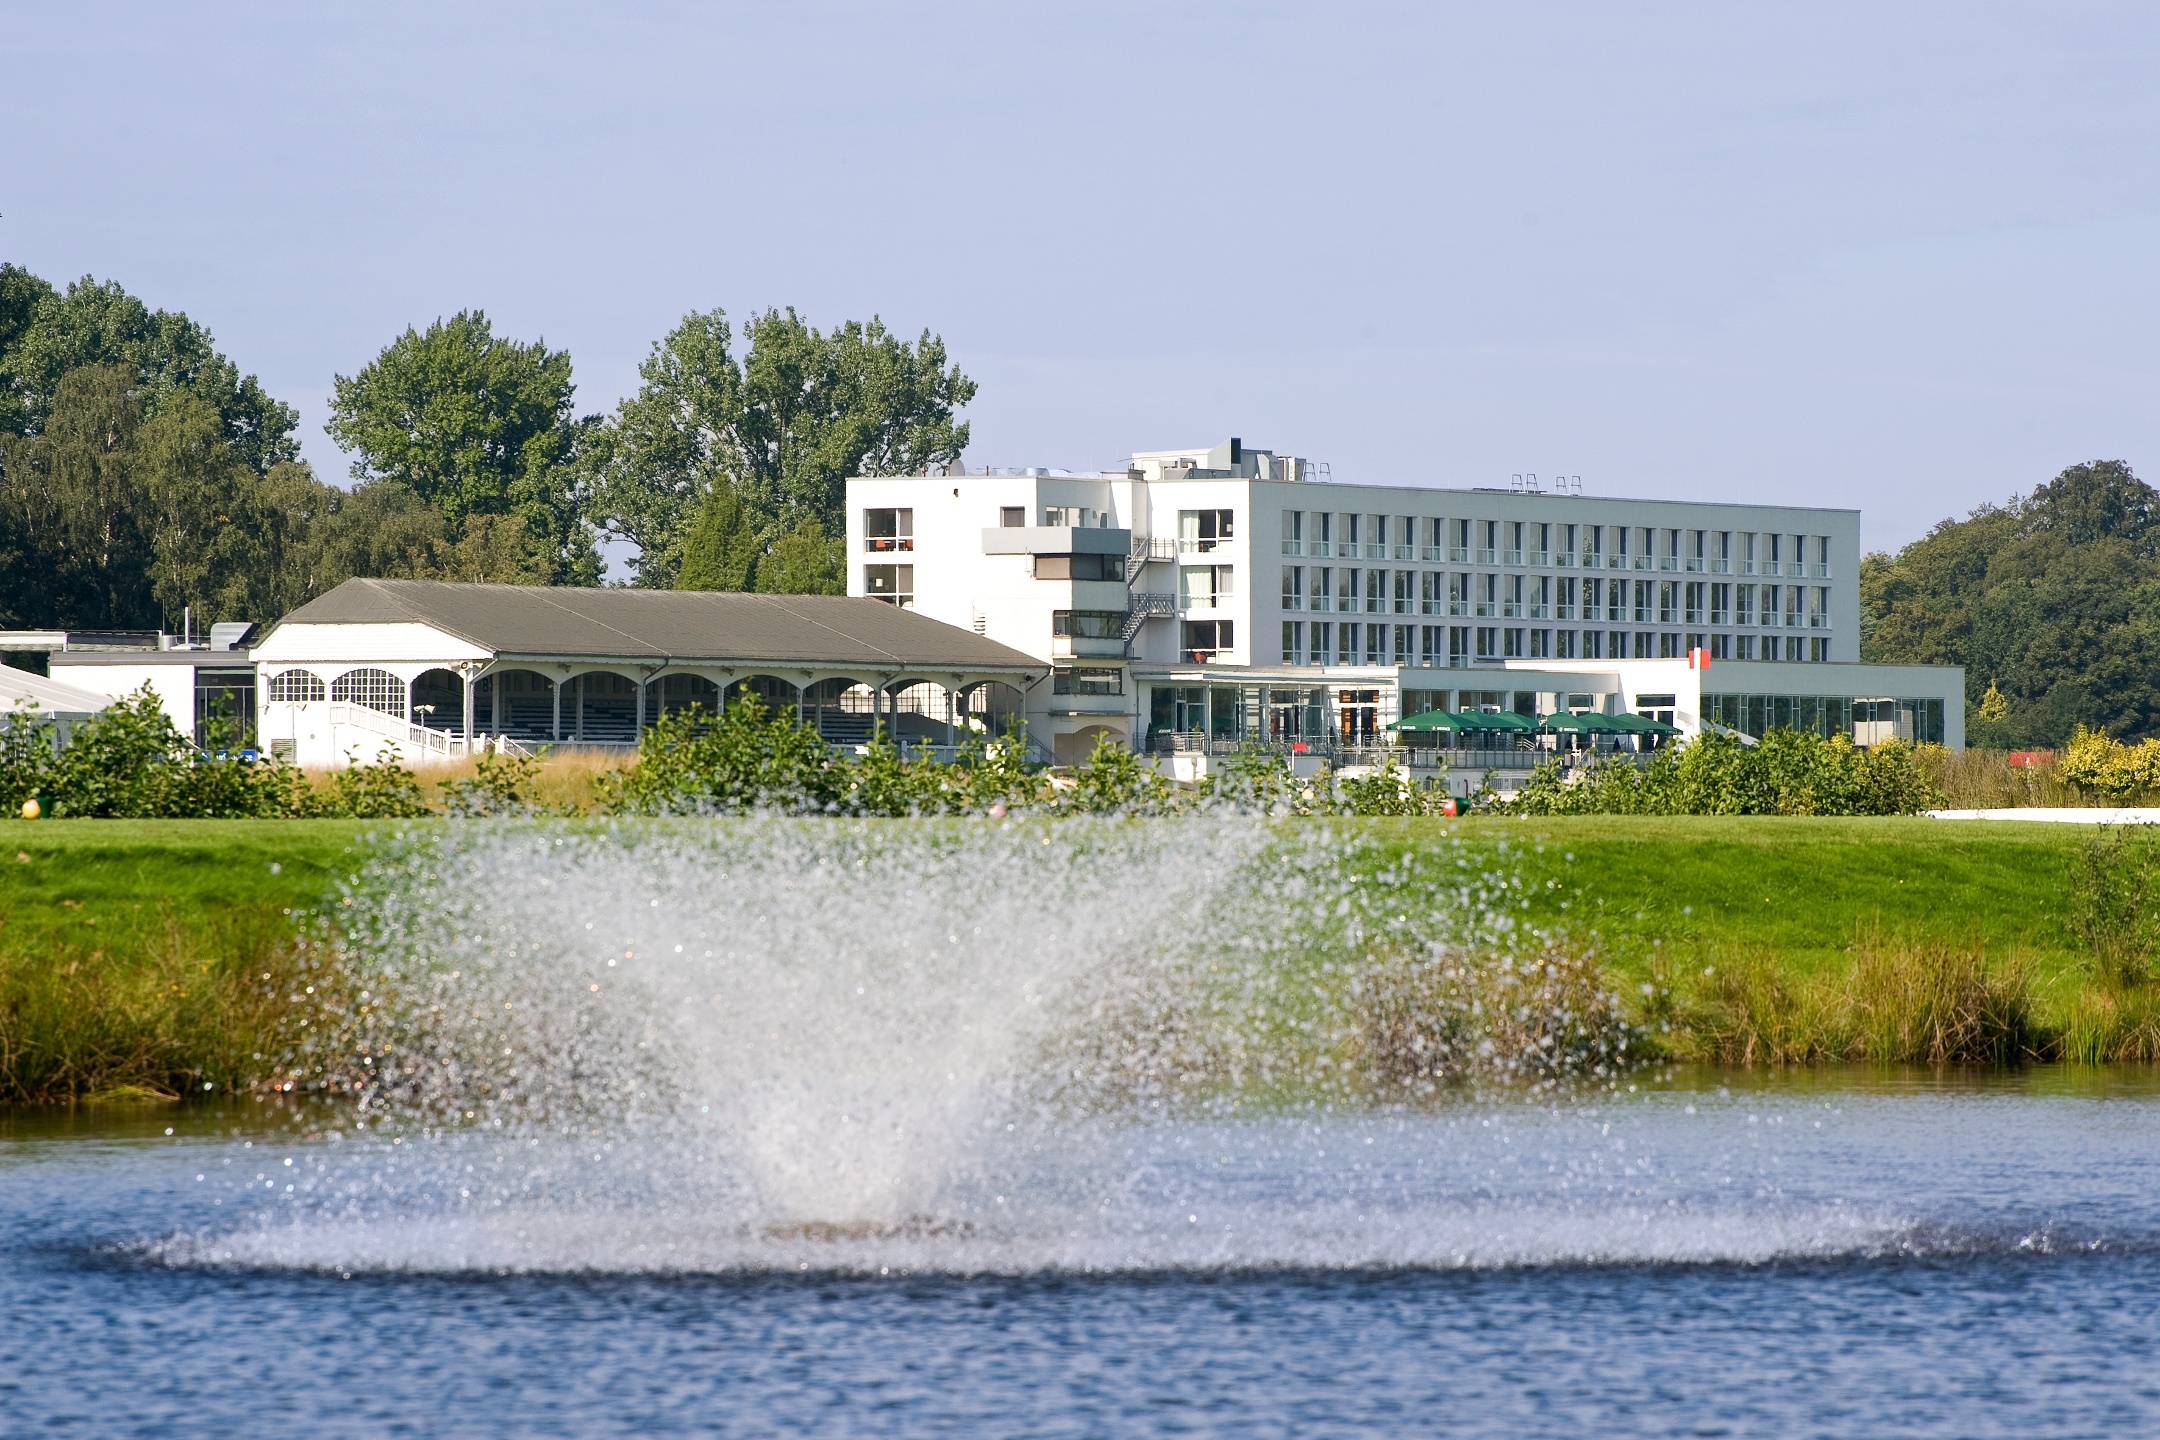  Wasserspiel auf dem See vor dem ATLANTIC Hotel Galopprennbahn in Bremen